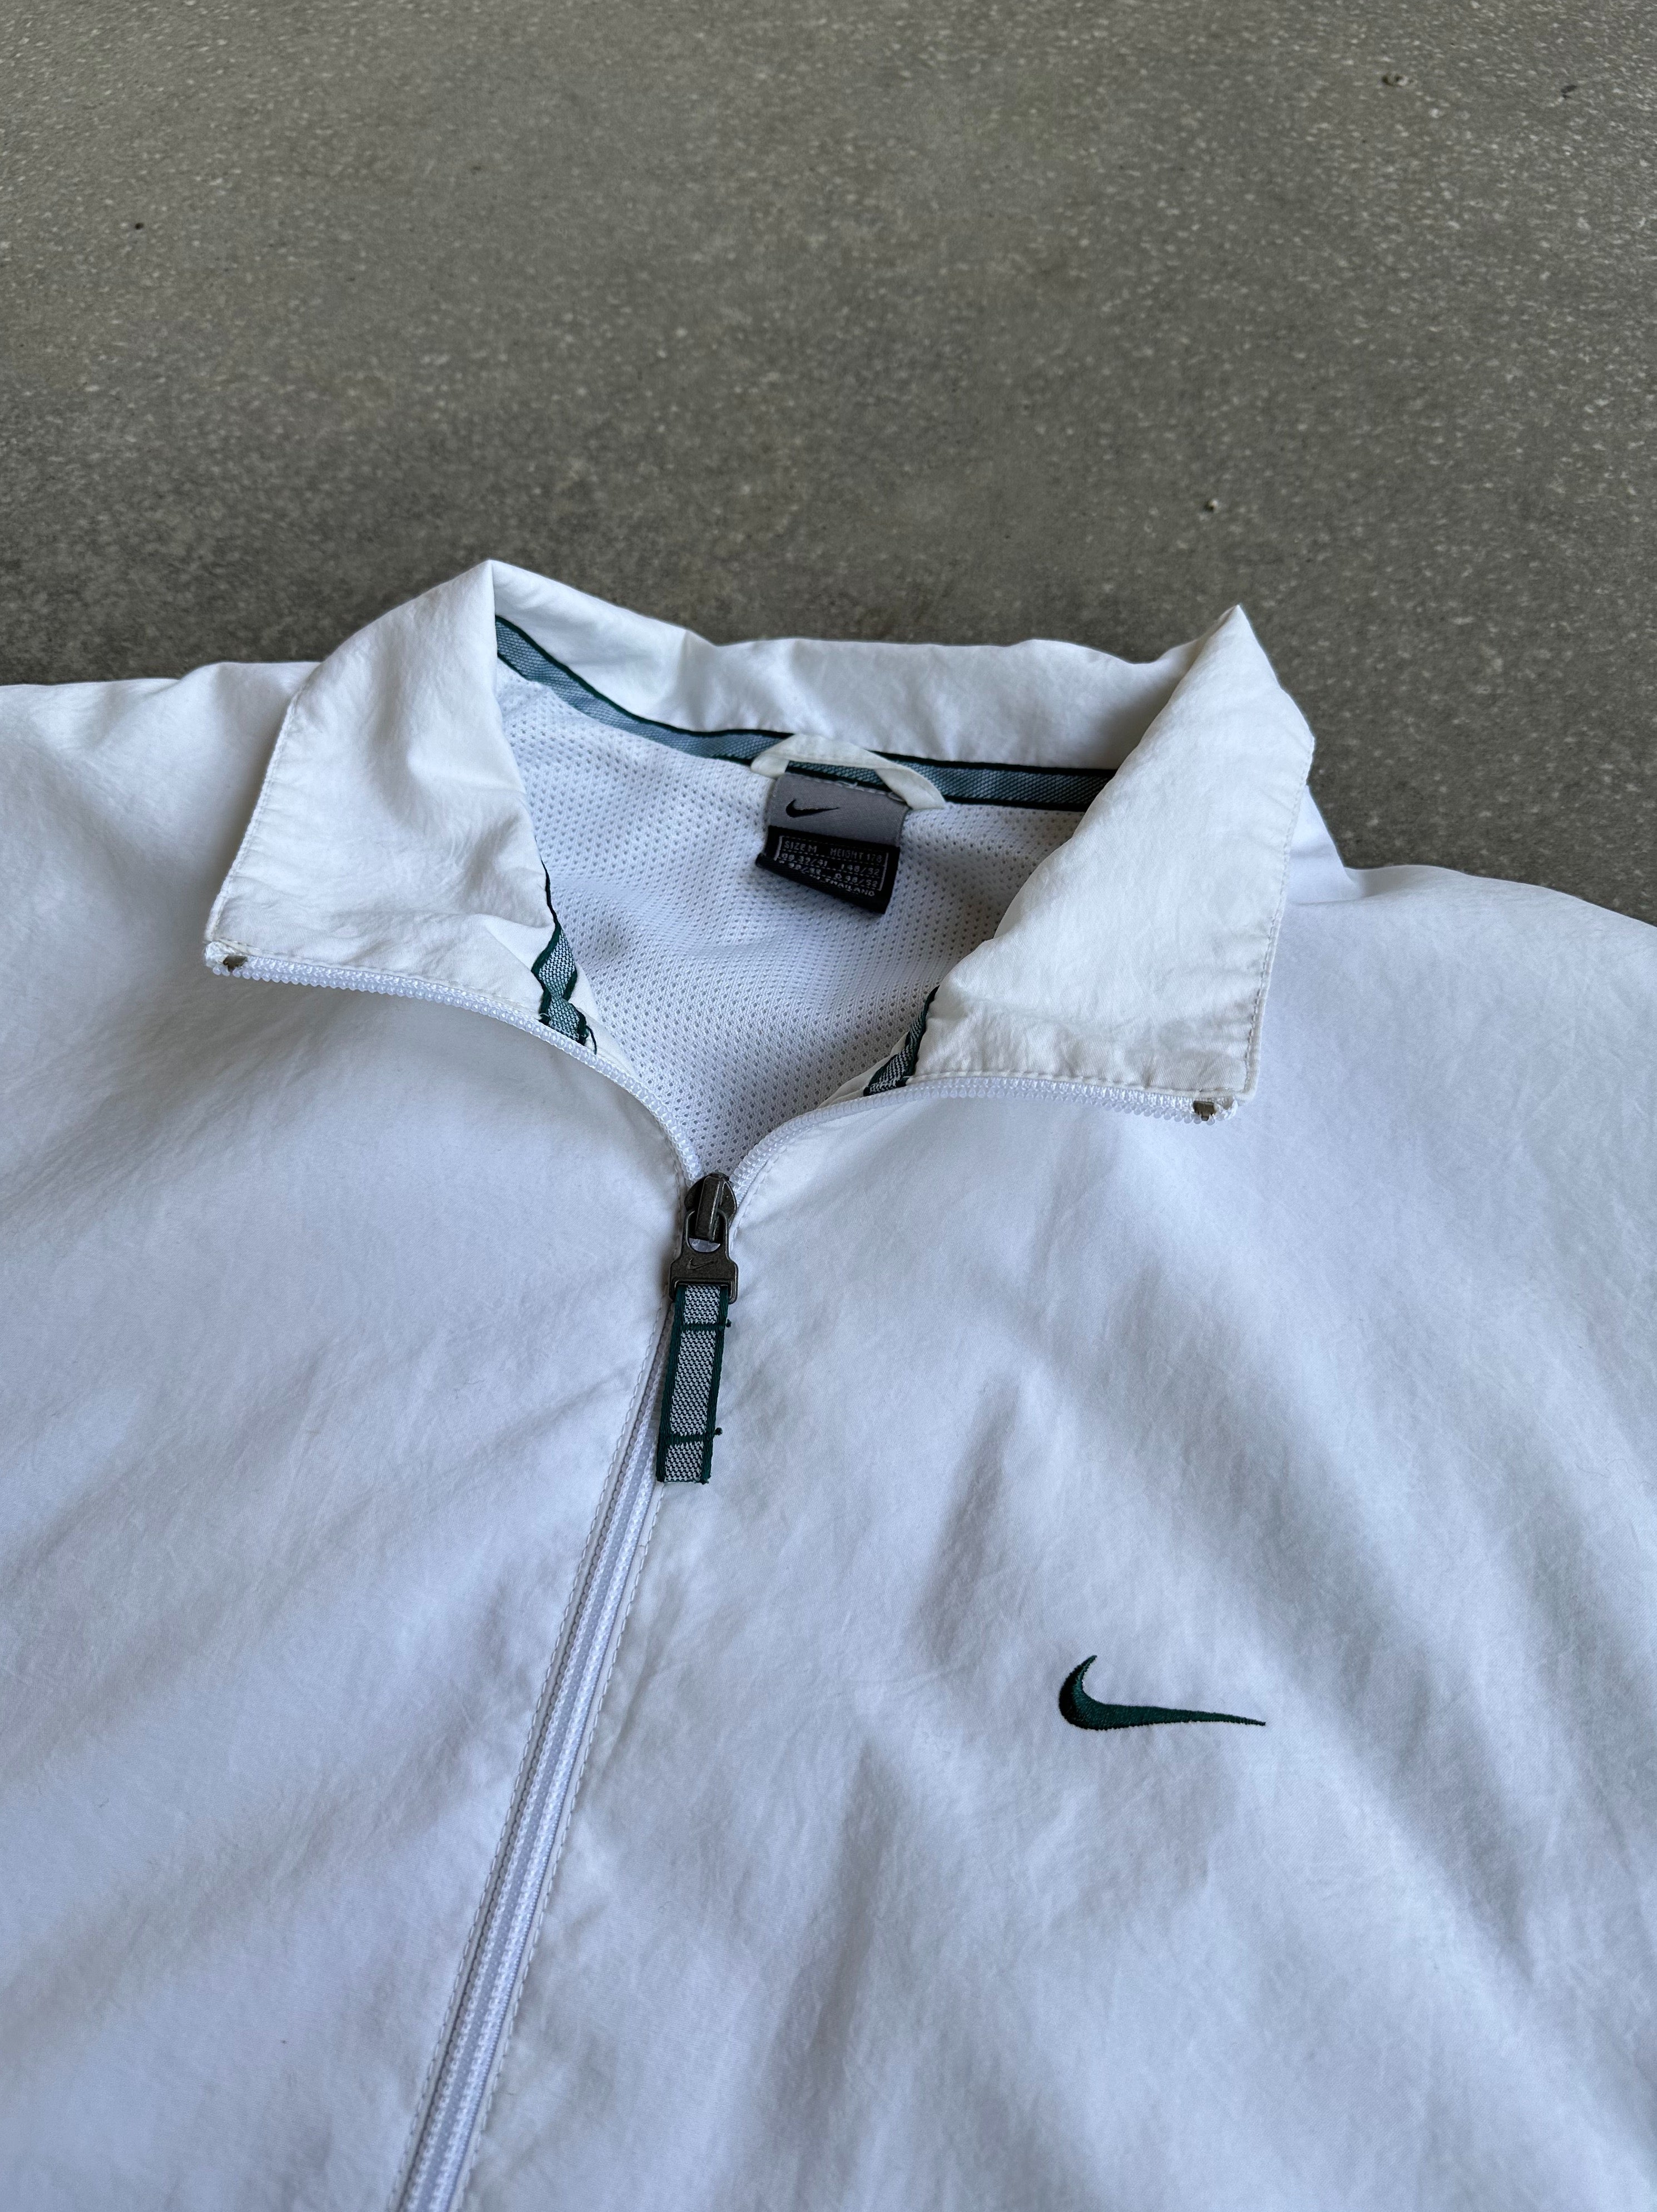 Vintage Nike Jacket - Medium